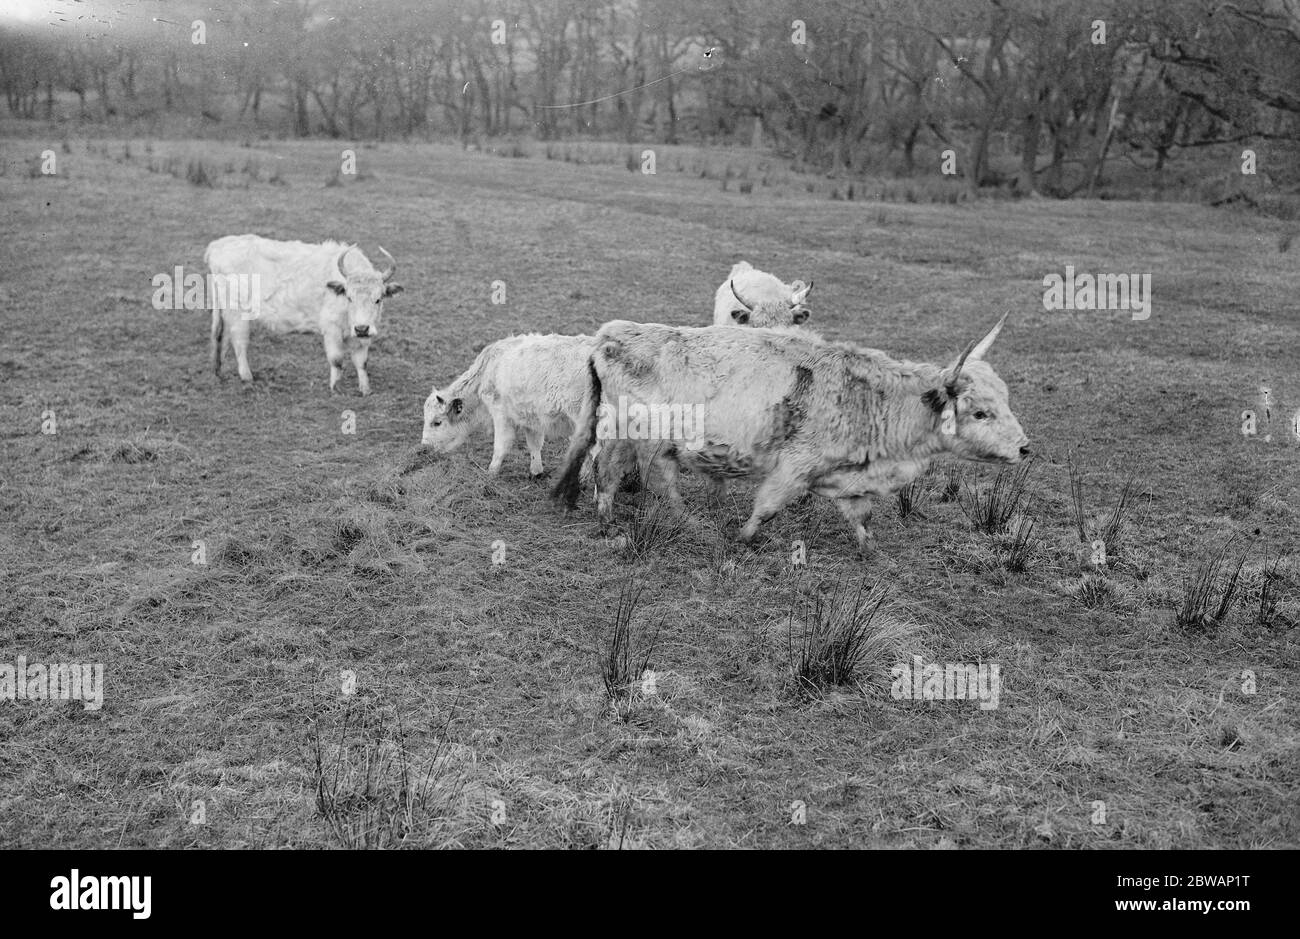 Chilingham Cattle eine Rasse von Rindern, die in Chilingham Castle, Northumberland, England leben. Diese seltene Rasse besteht aus etwa 90 Tieren in Chilingham, die einen sehr großen Park bewohnen, der seit dem Mittelalter existiert. Die Herde ist seit Hunderten von Jahren bemerkenswert genetisch isoliert geblieben und überlebte trotz der Inzucht Depression aufgrund der geringen Population Stockfoto